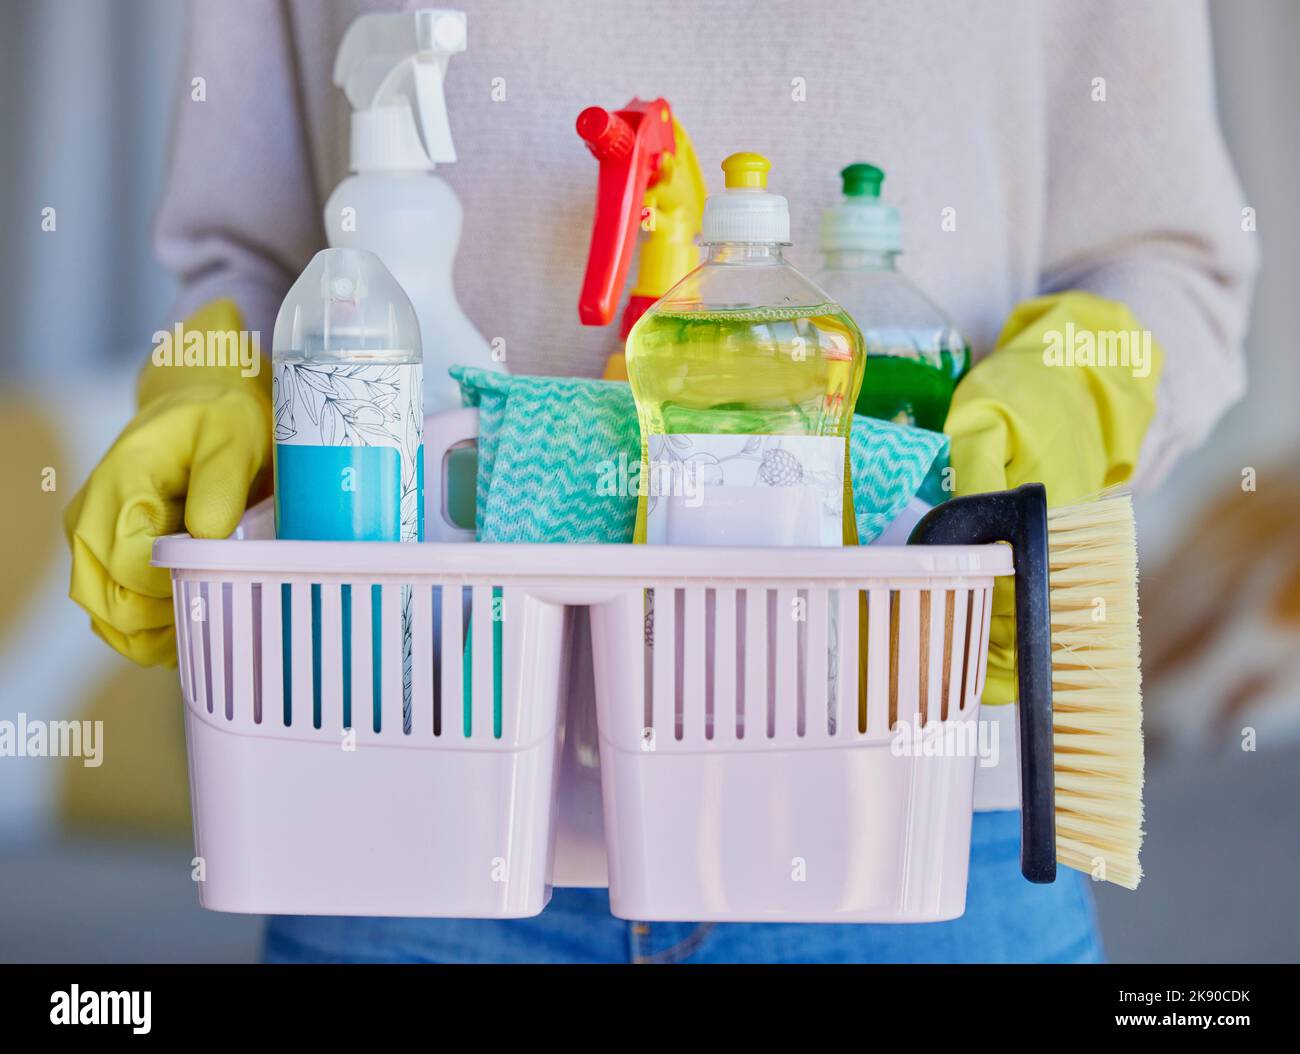 Femme, mains ou contenant de produits d'entretien ménager pour le service de nettoyage à la maison, la femme de ménage ou l'employé de l'hôtel. Vaporisateur zoom, brosse ou tissu Banque D'Images